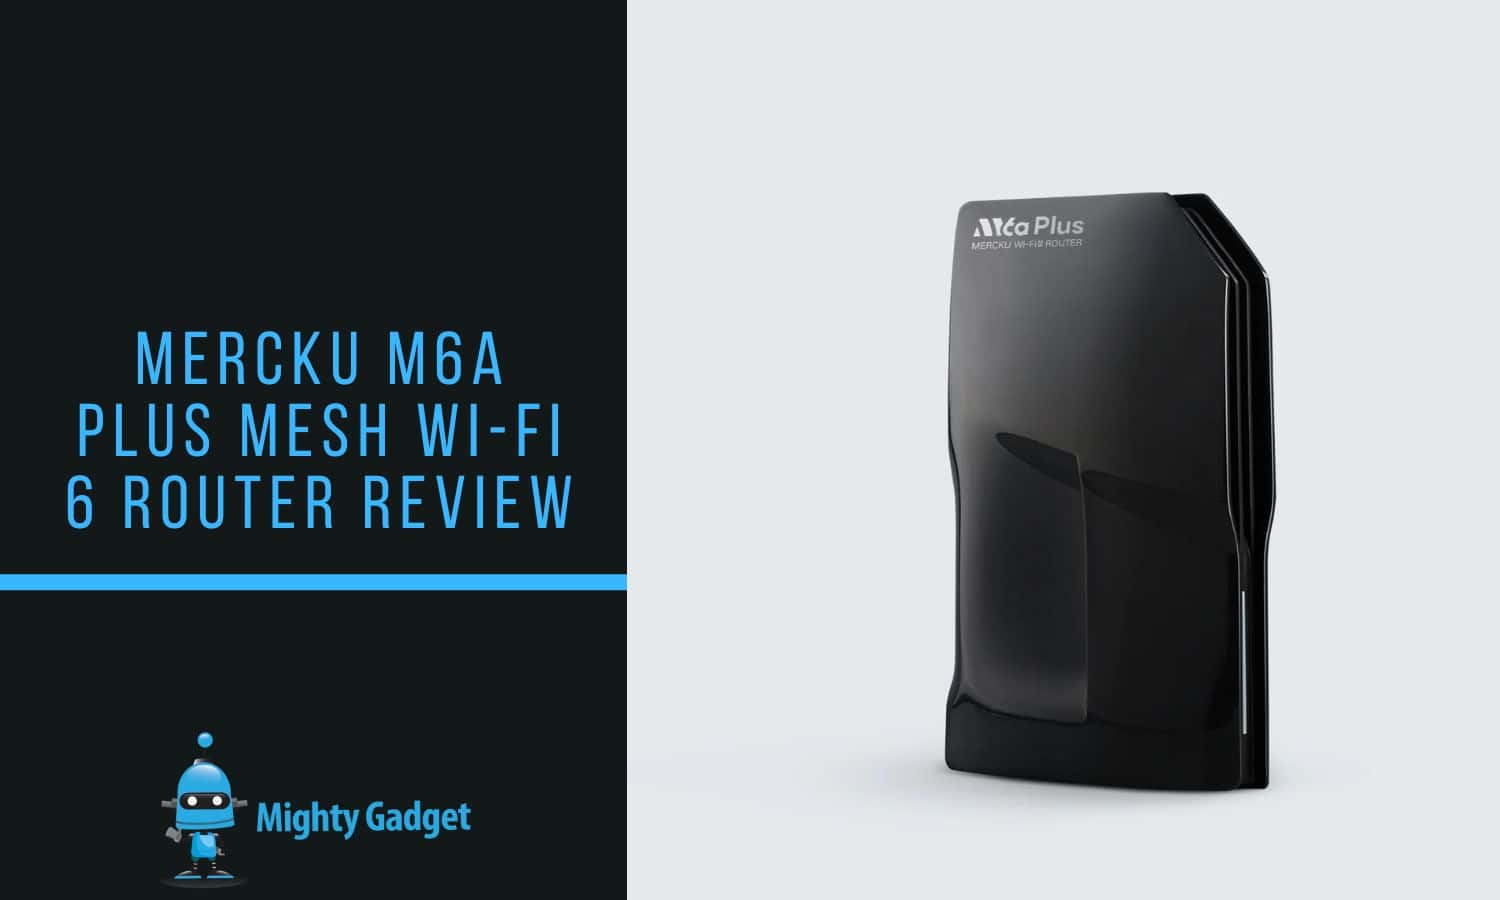 Mercku M6a Plus Mesh Wi-Fi 6 Router Review